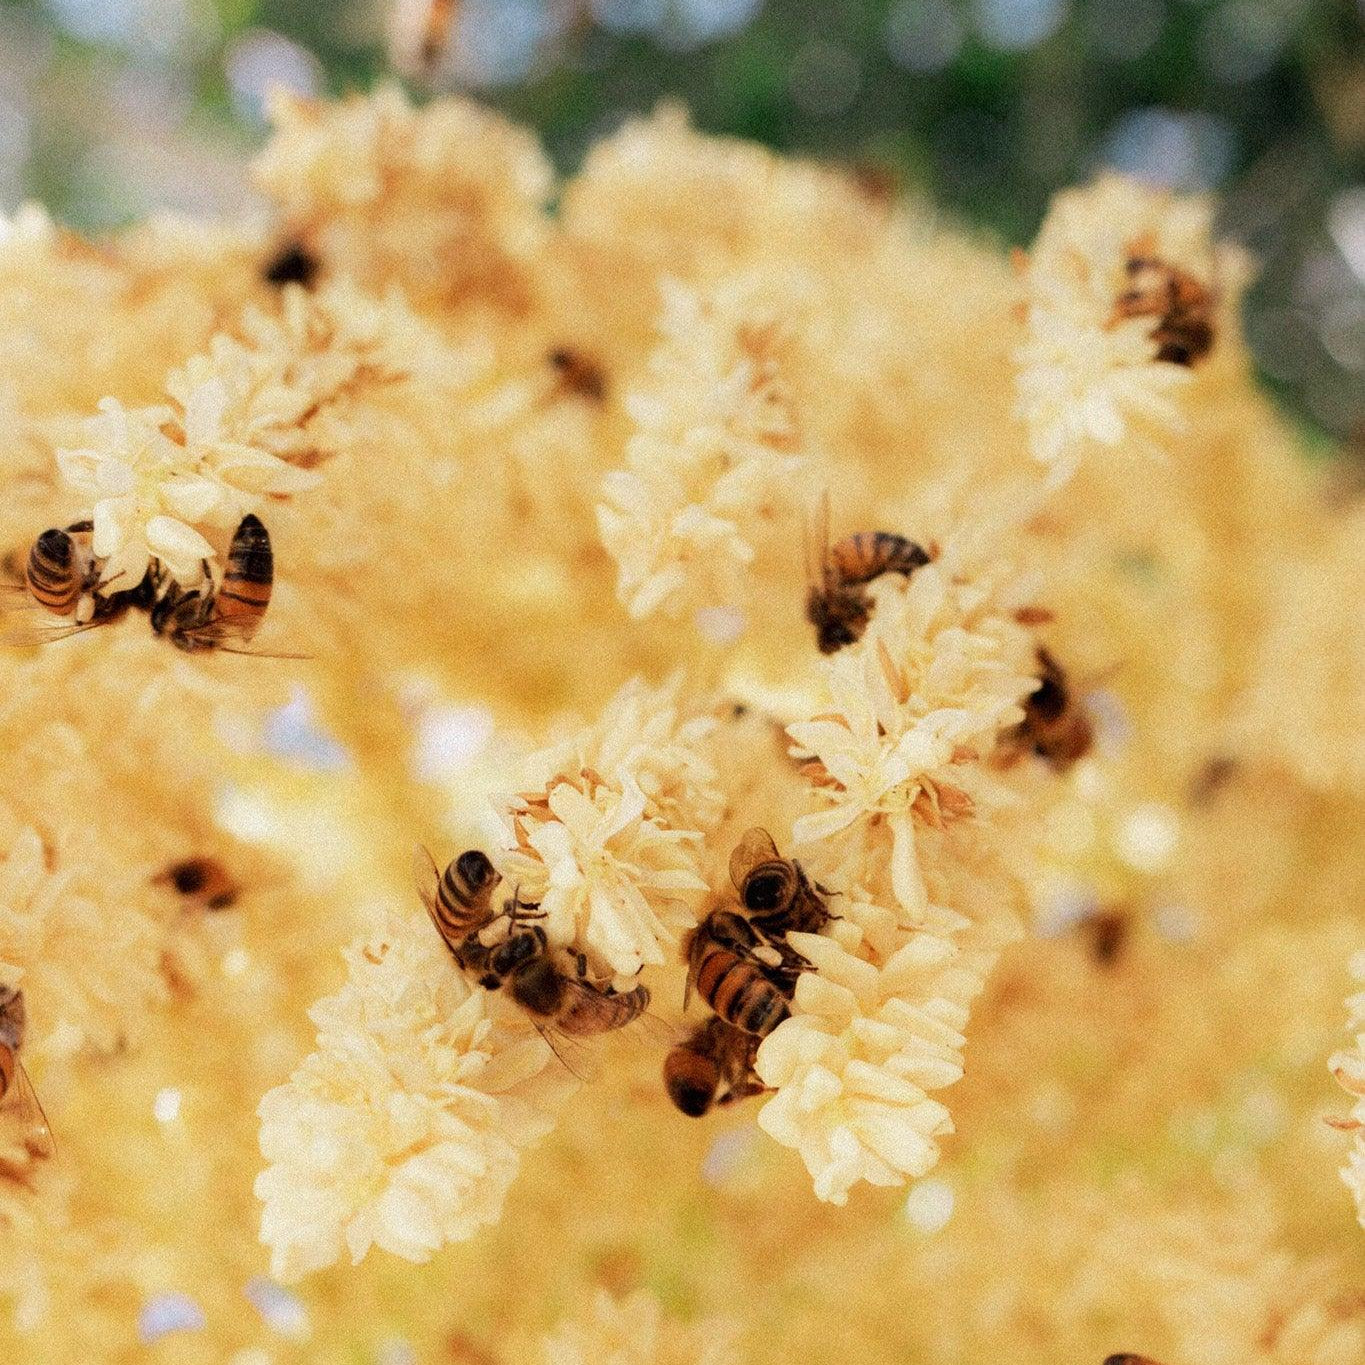 Včely a umění: Včely jako inspirace pro umělce, včelařské motivy v uměleckých dílech a kreativní projekty spojené s včelami - Davidova ekologická včelí farma